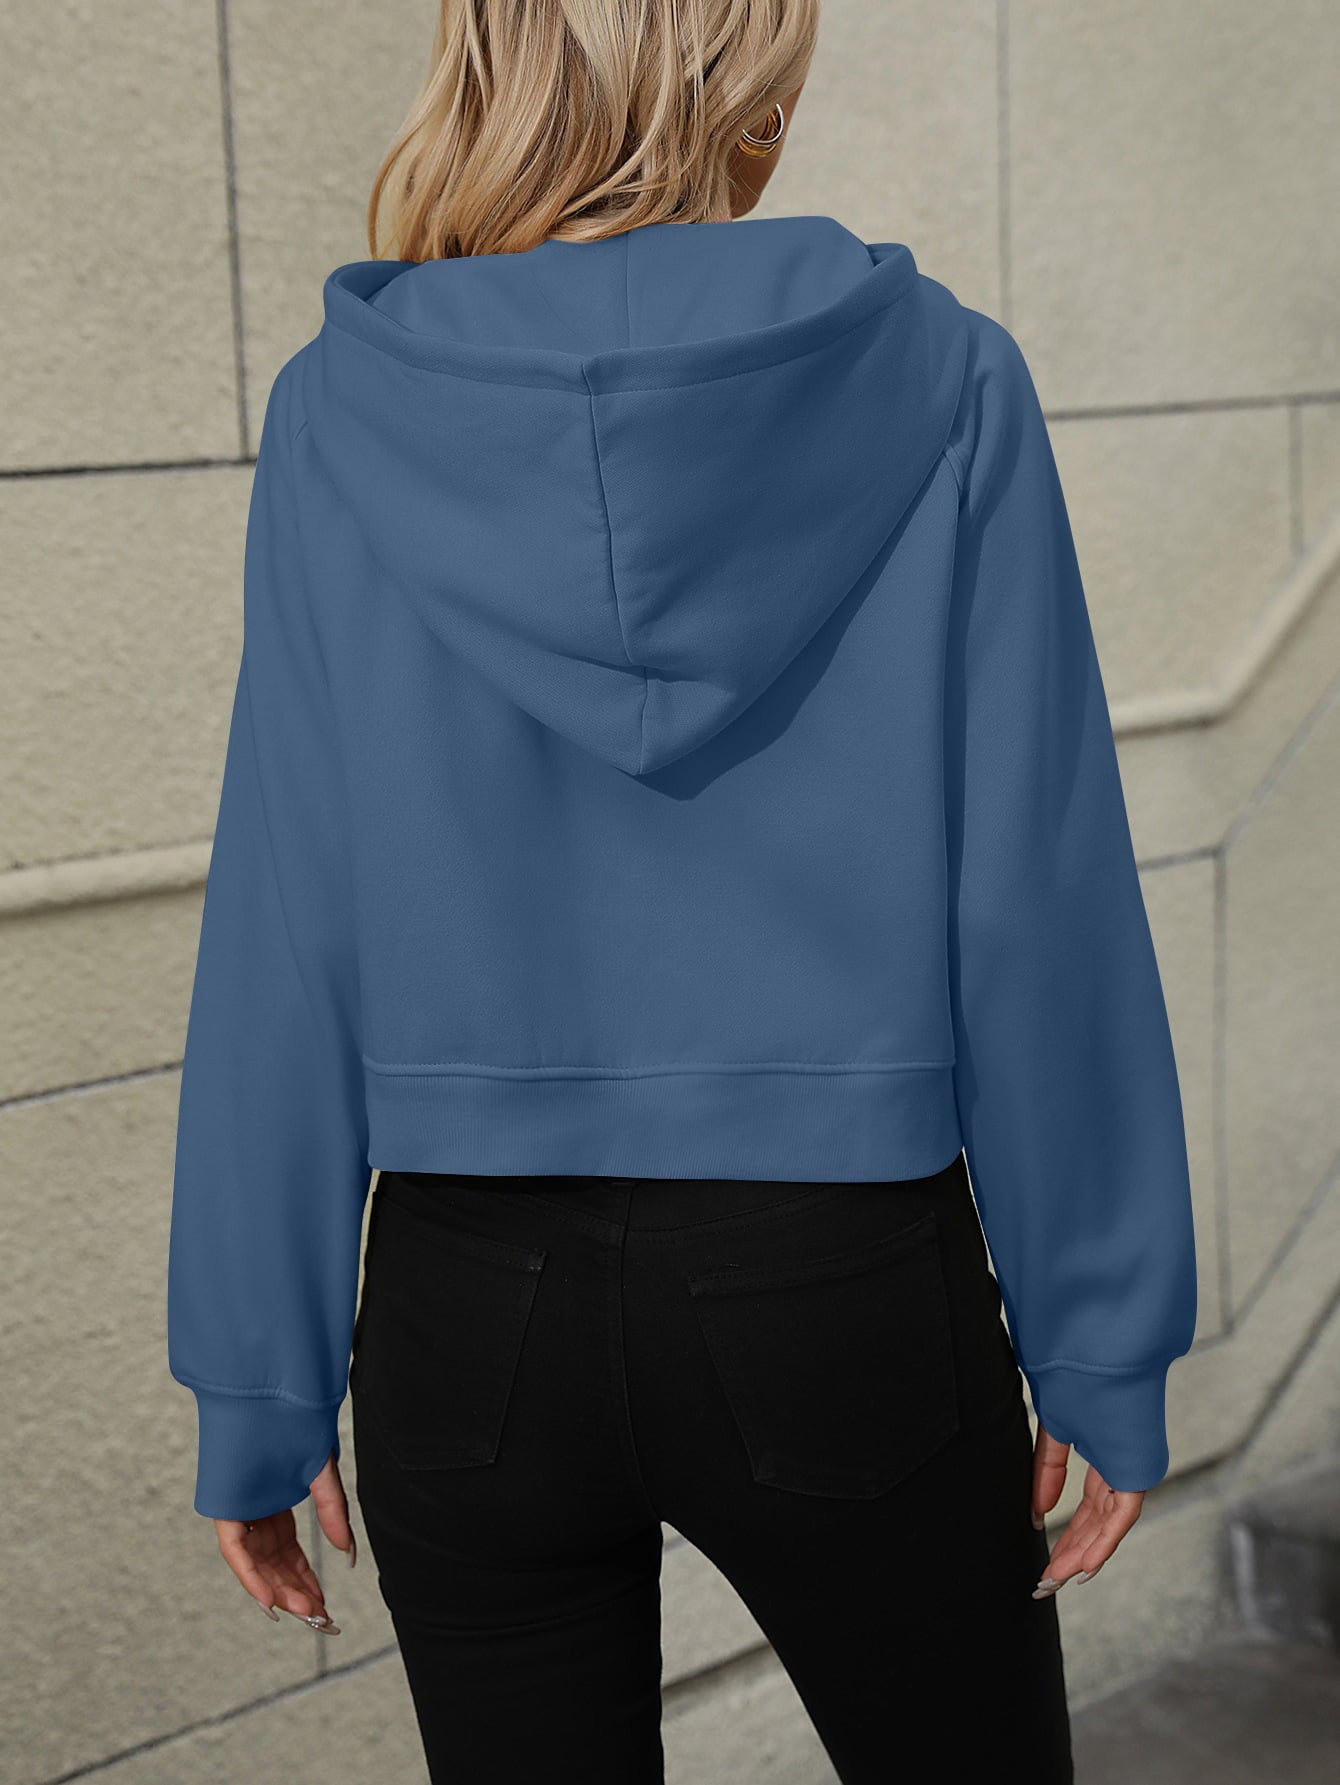 A Raglan Sleeve Zip-Up Hoodie with Pocket